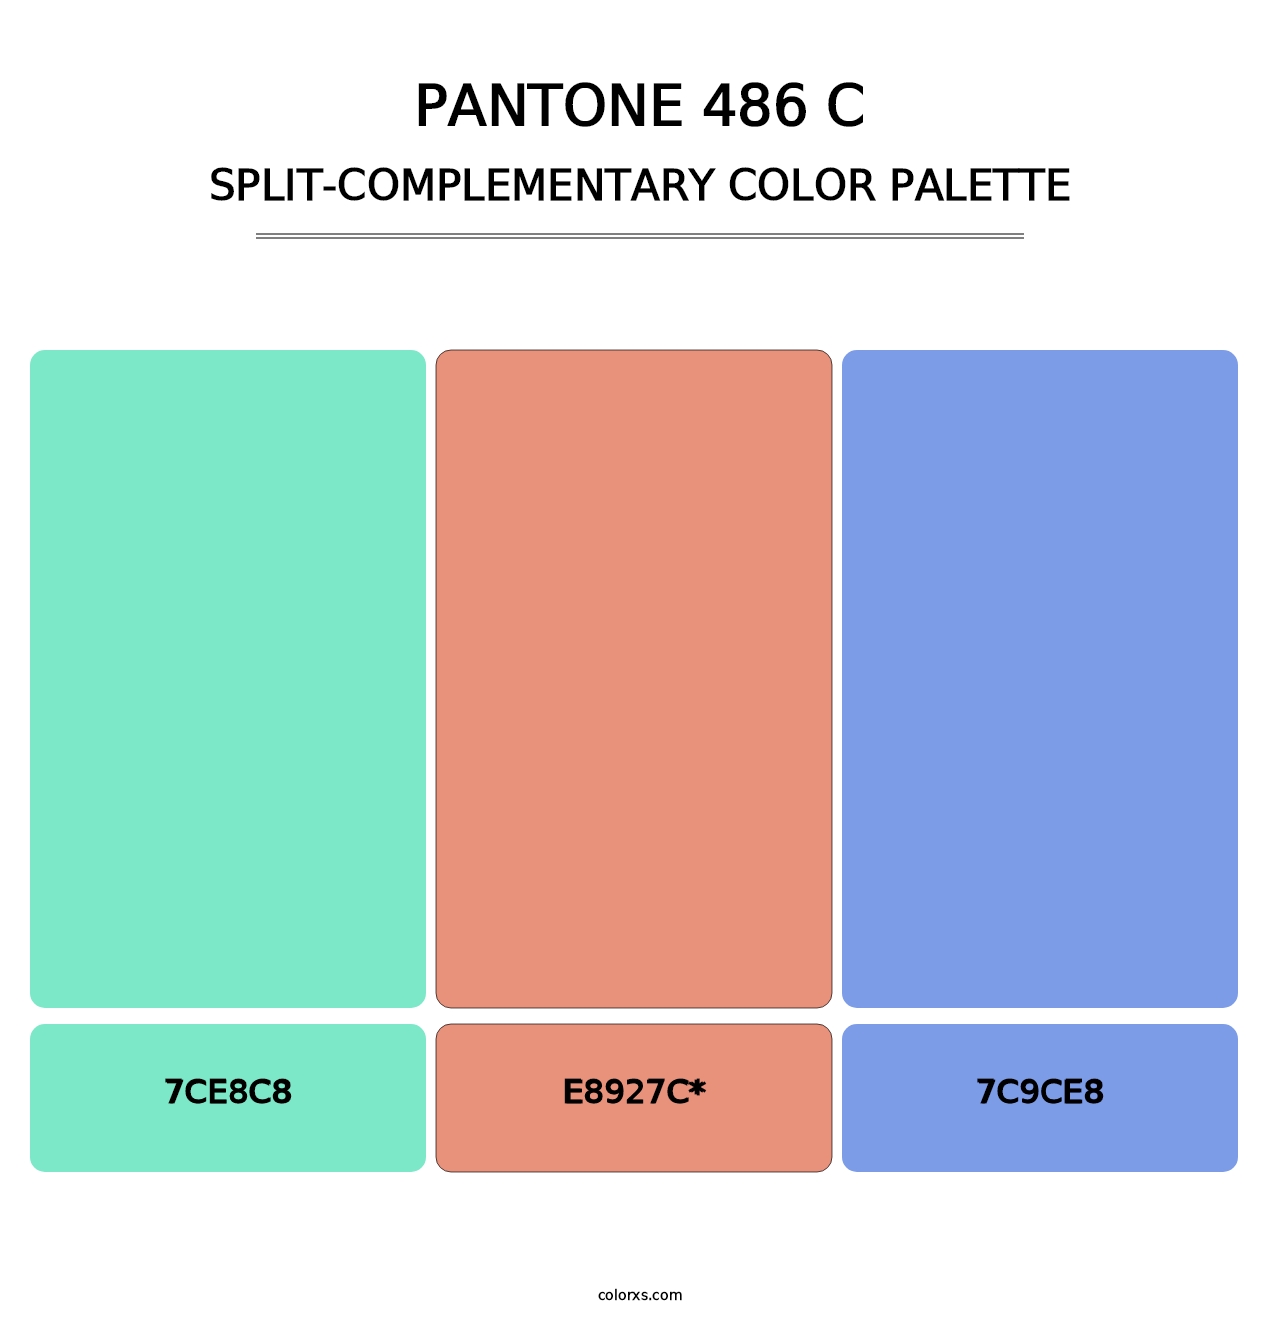 PANTONE 486 C - Split-Complementary Color Palette